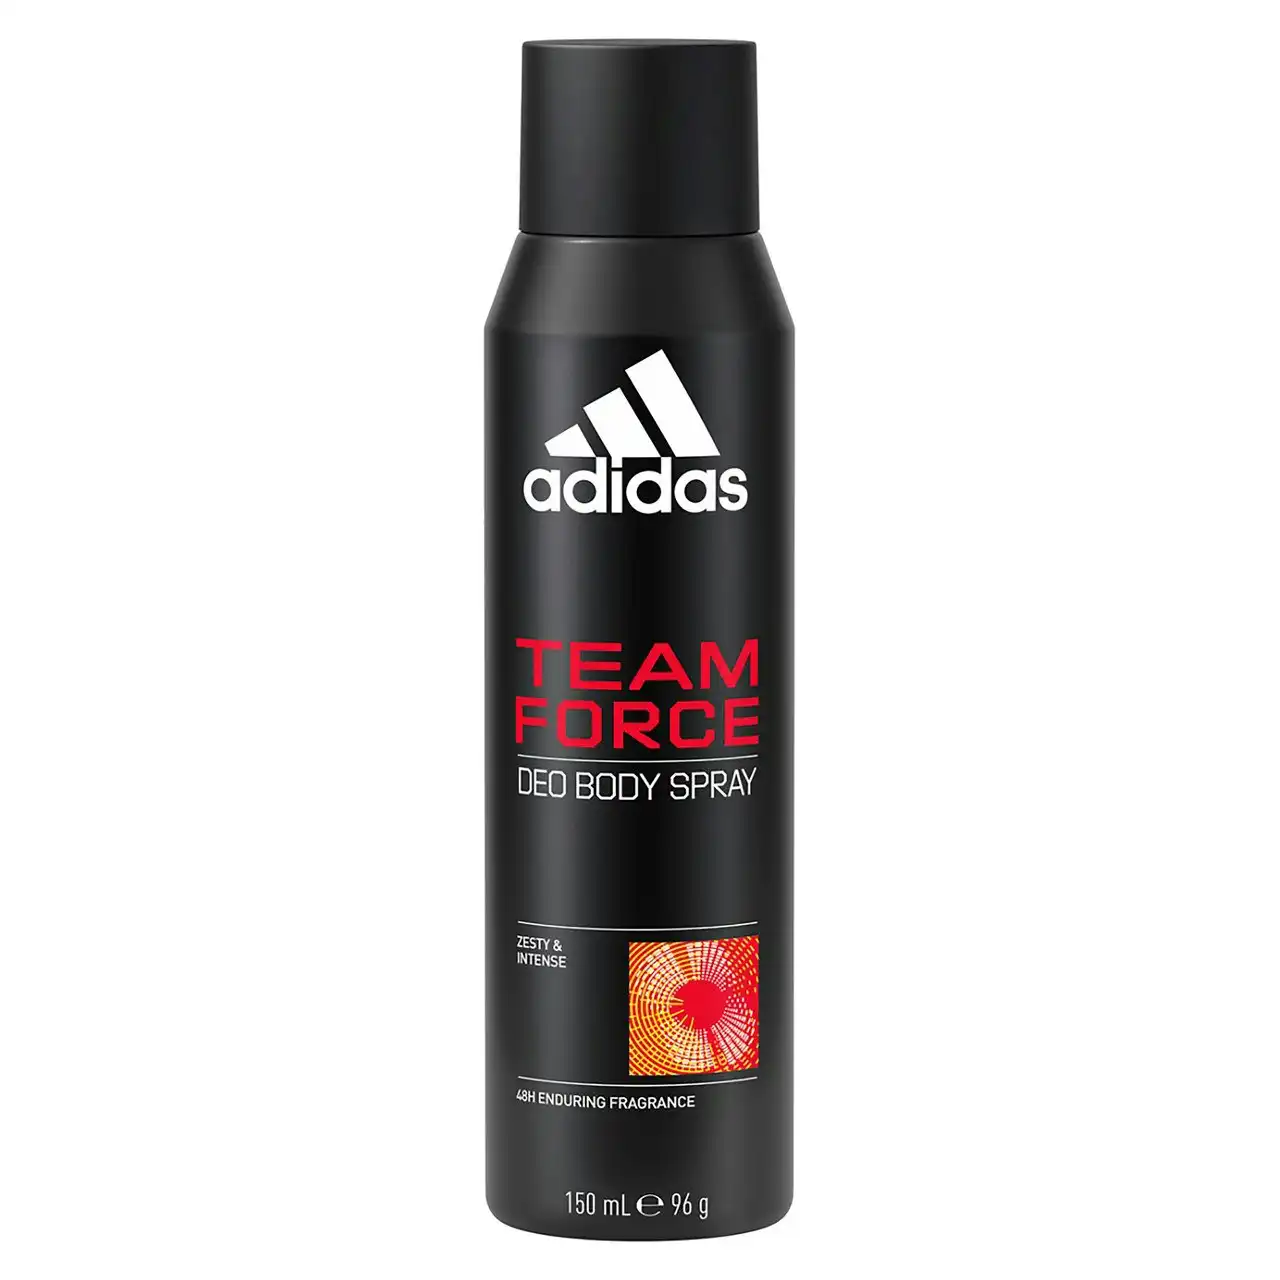 Adidas Team Force Deodorant Body Spray 150ml